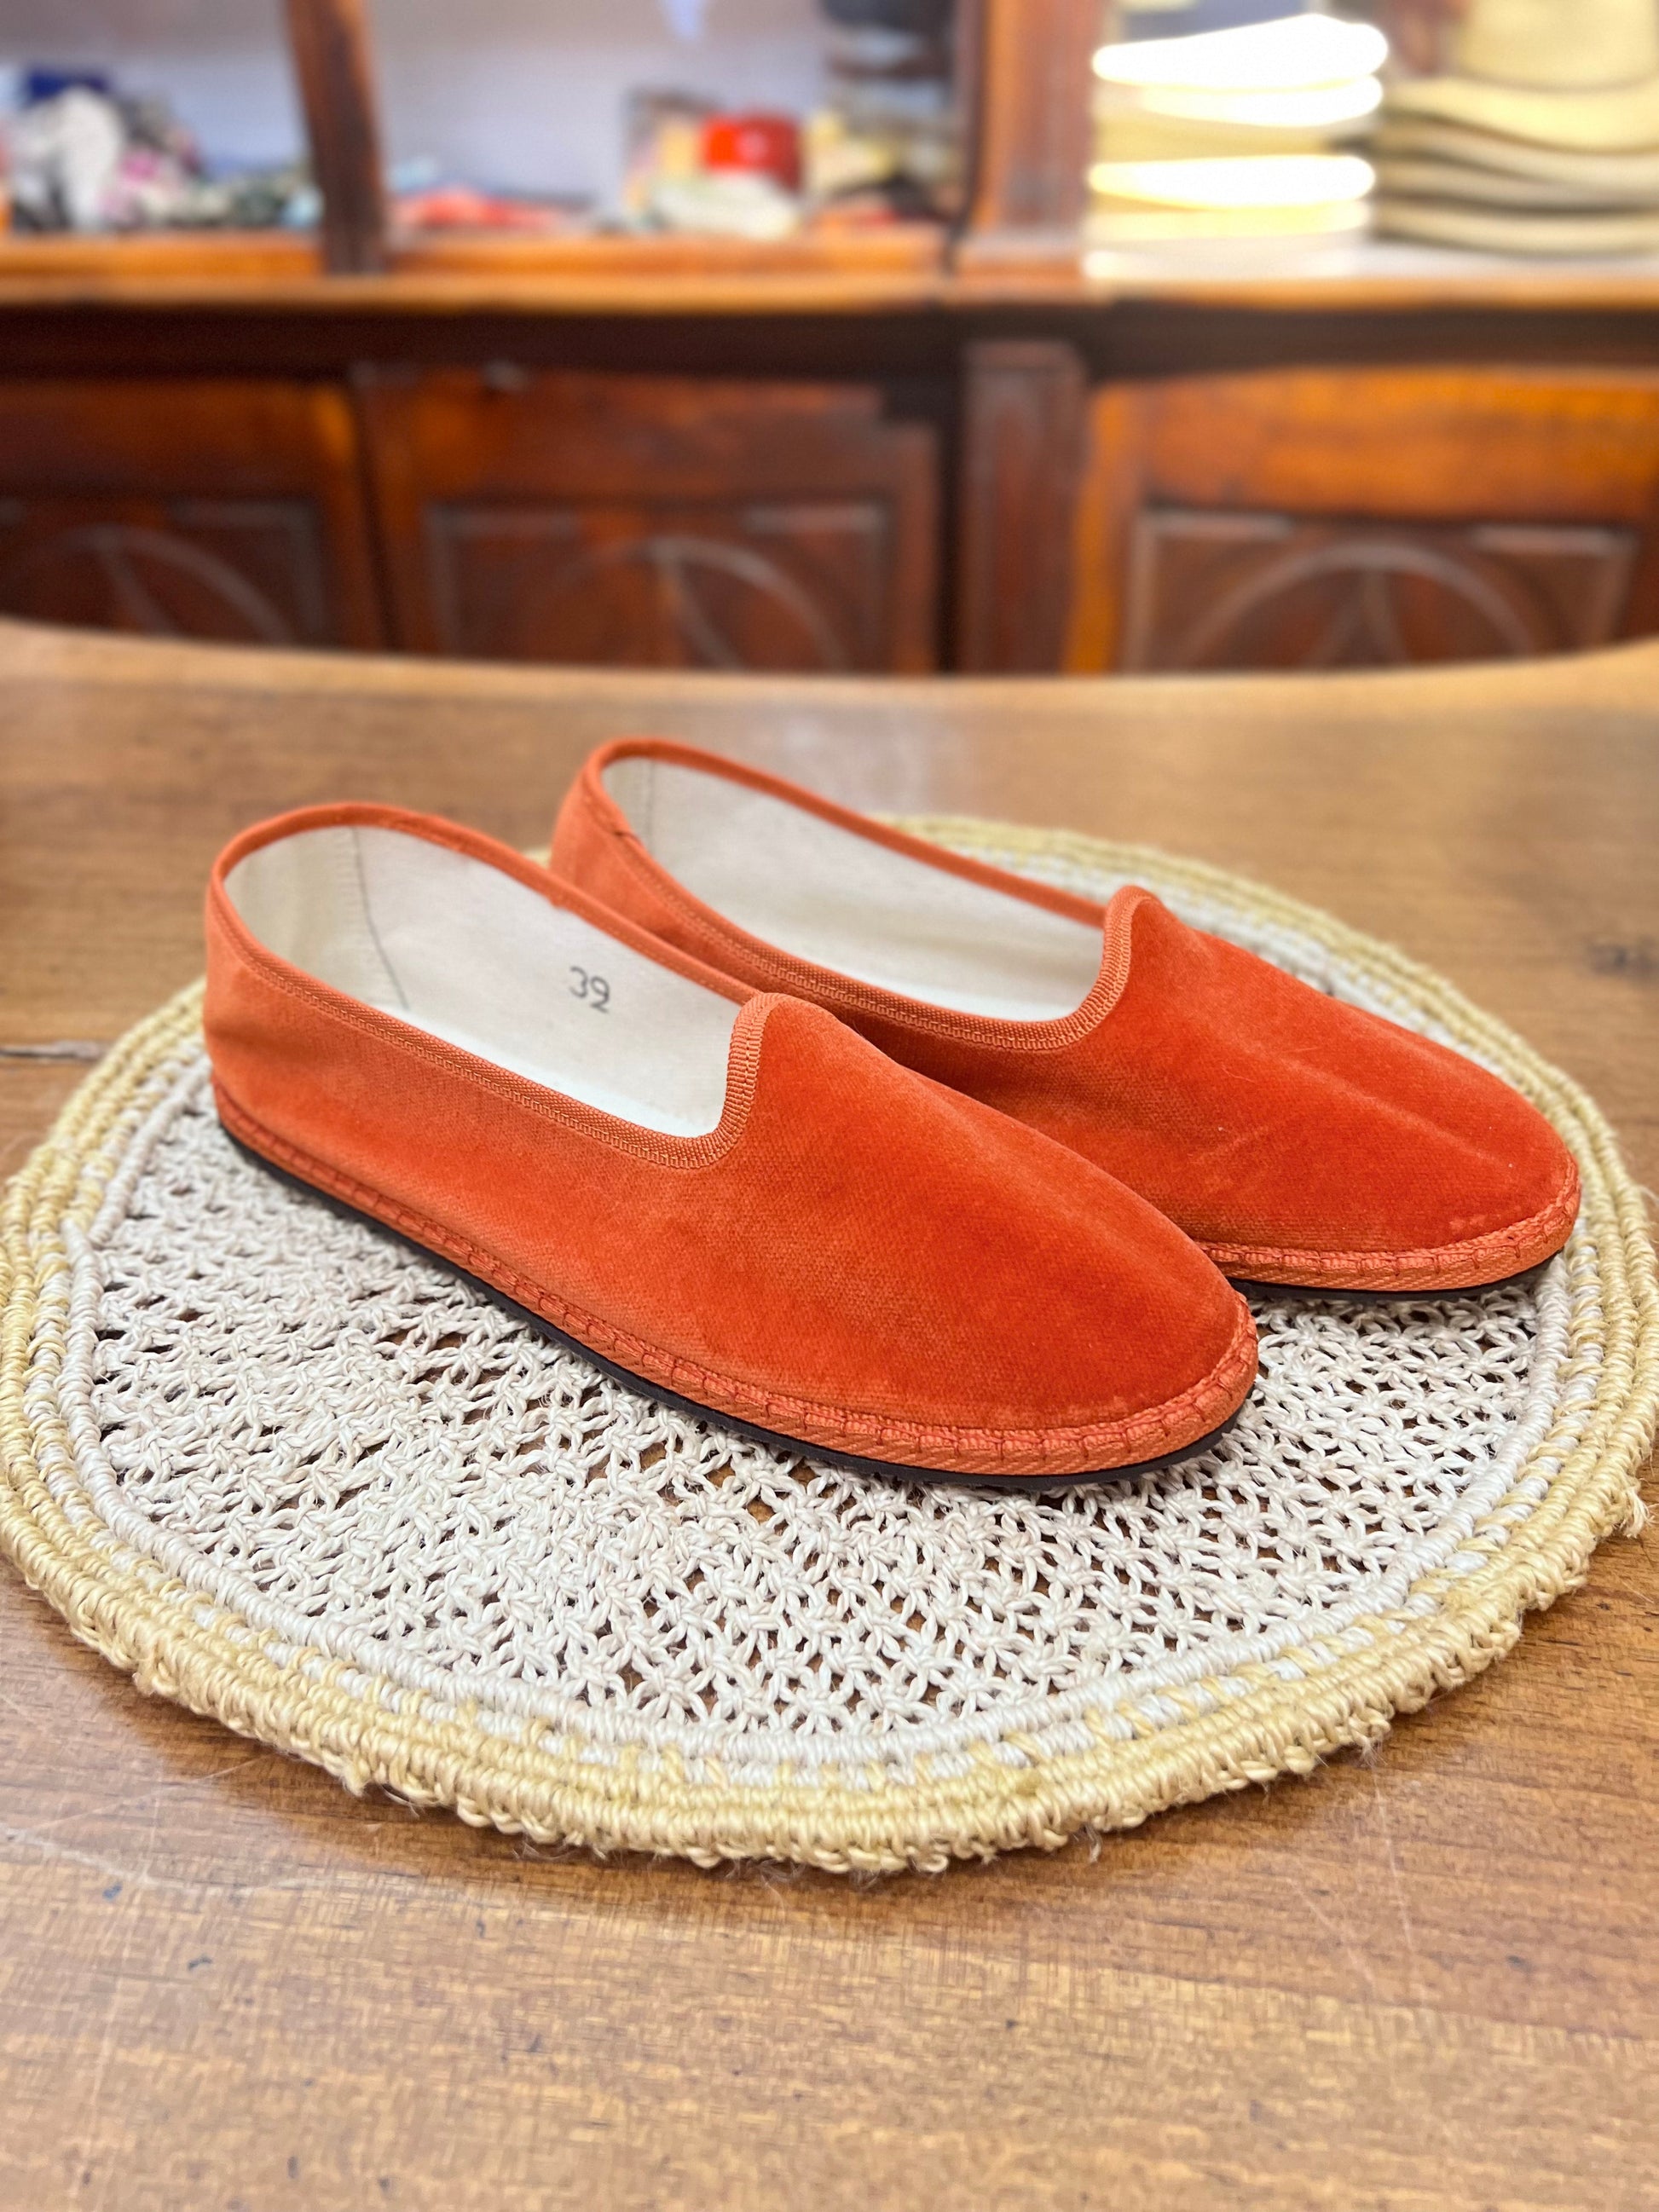 Scarpe friulane di colore arancione